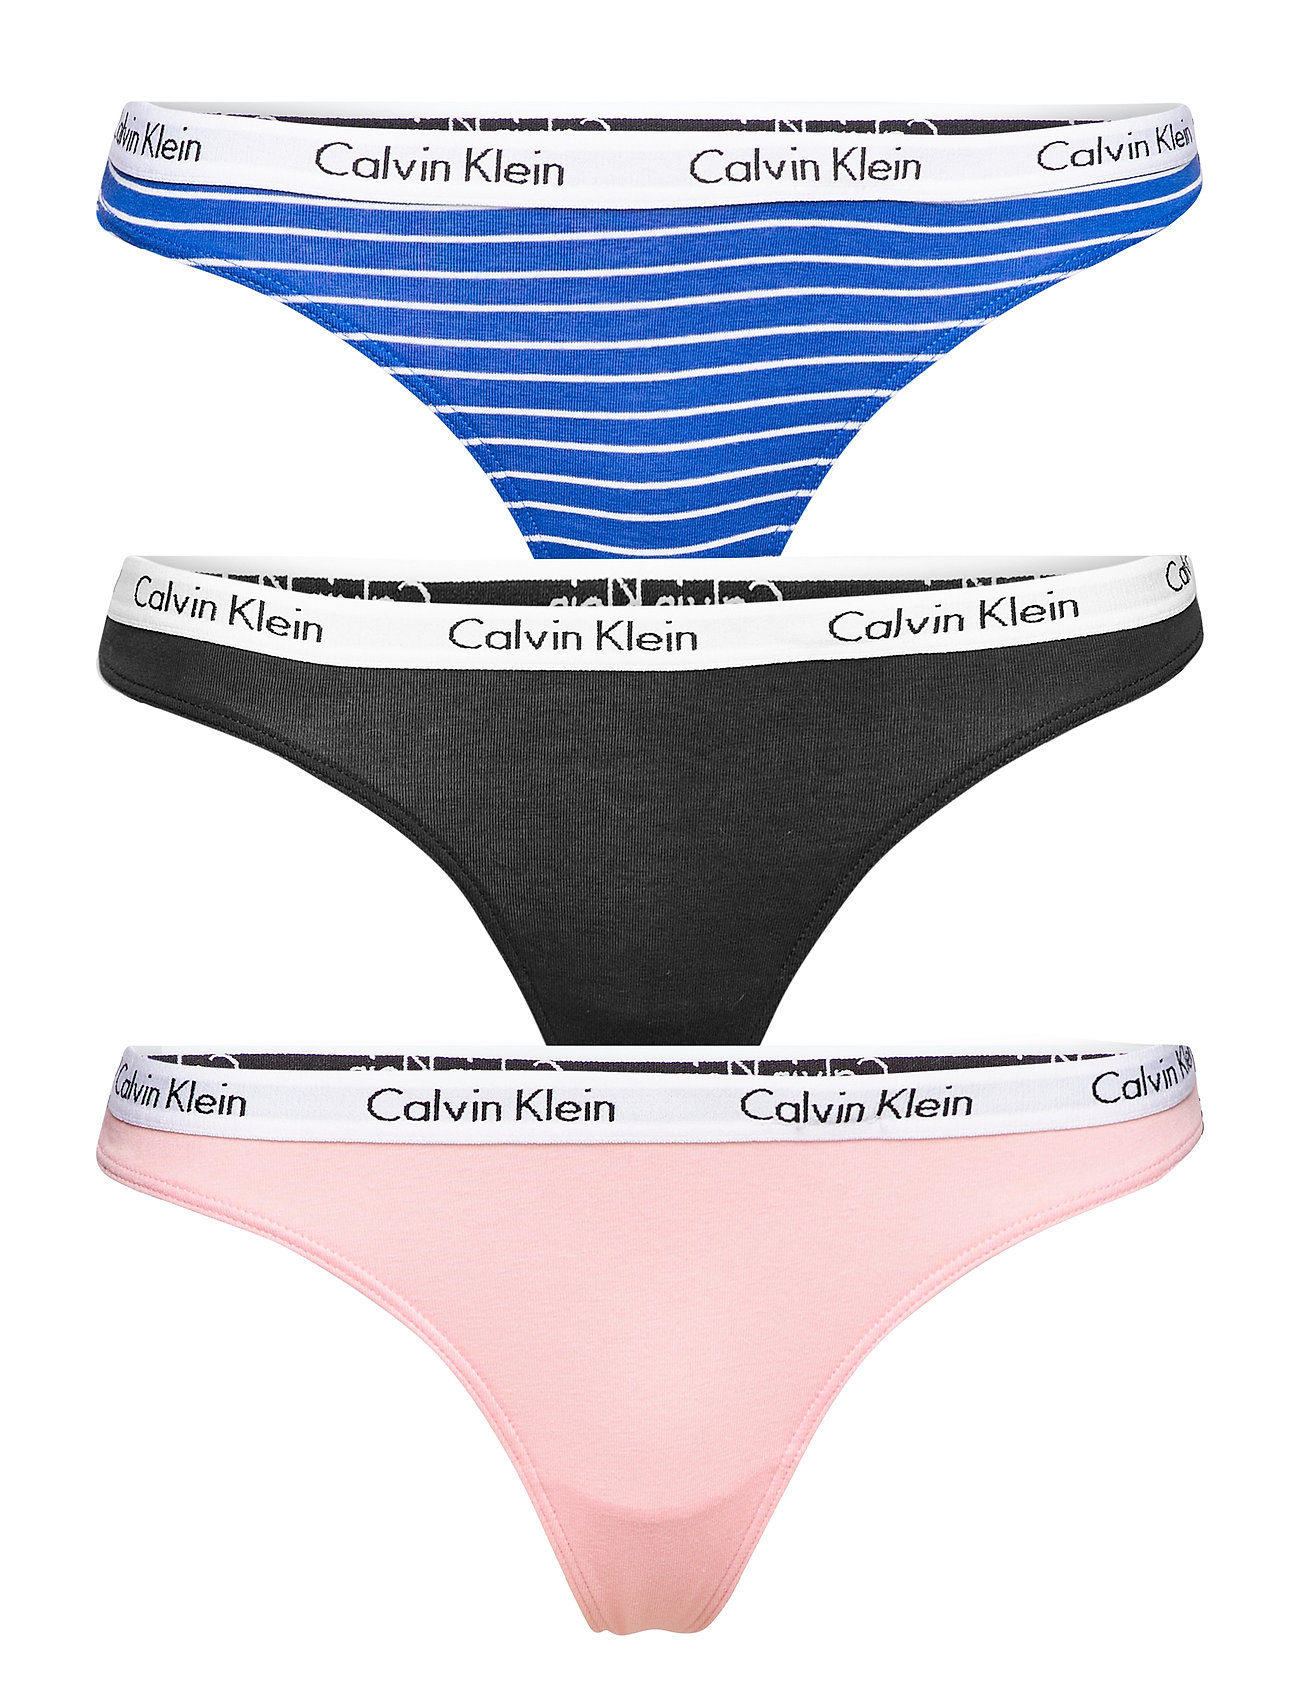 Calvin Klein – Thong 3pk G-streng Undertøj Blå Calvin Klein til i Sort - Pashion.dk